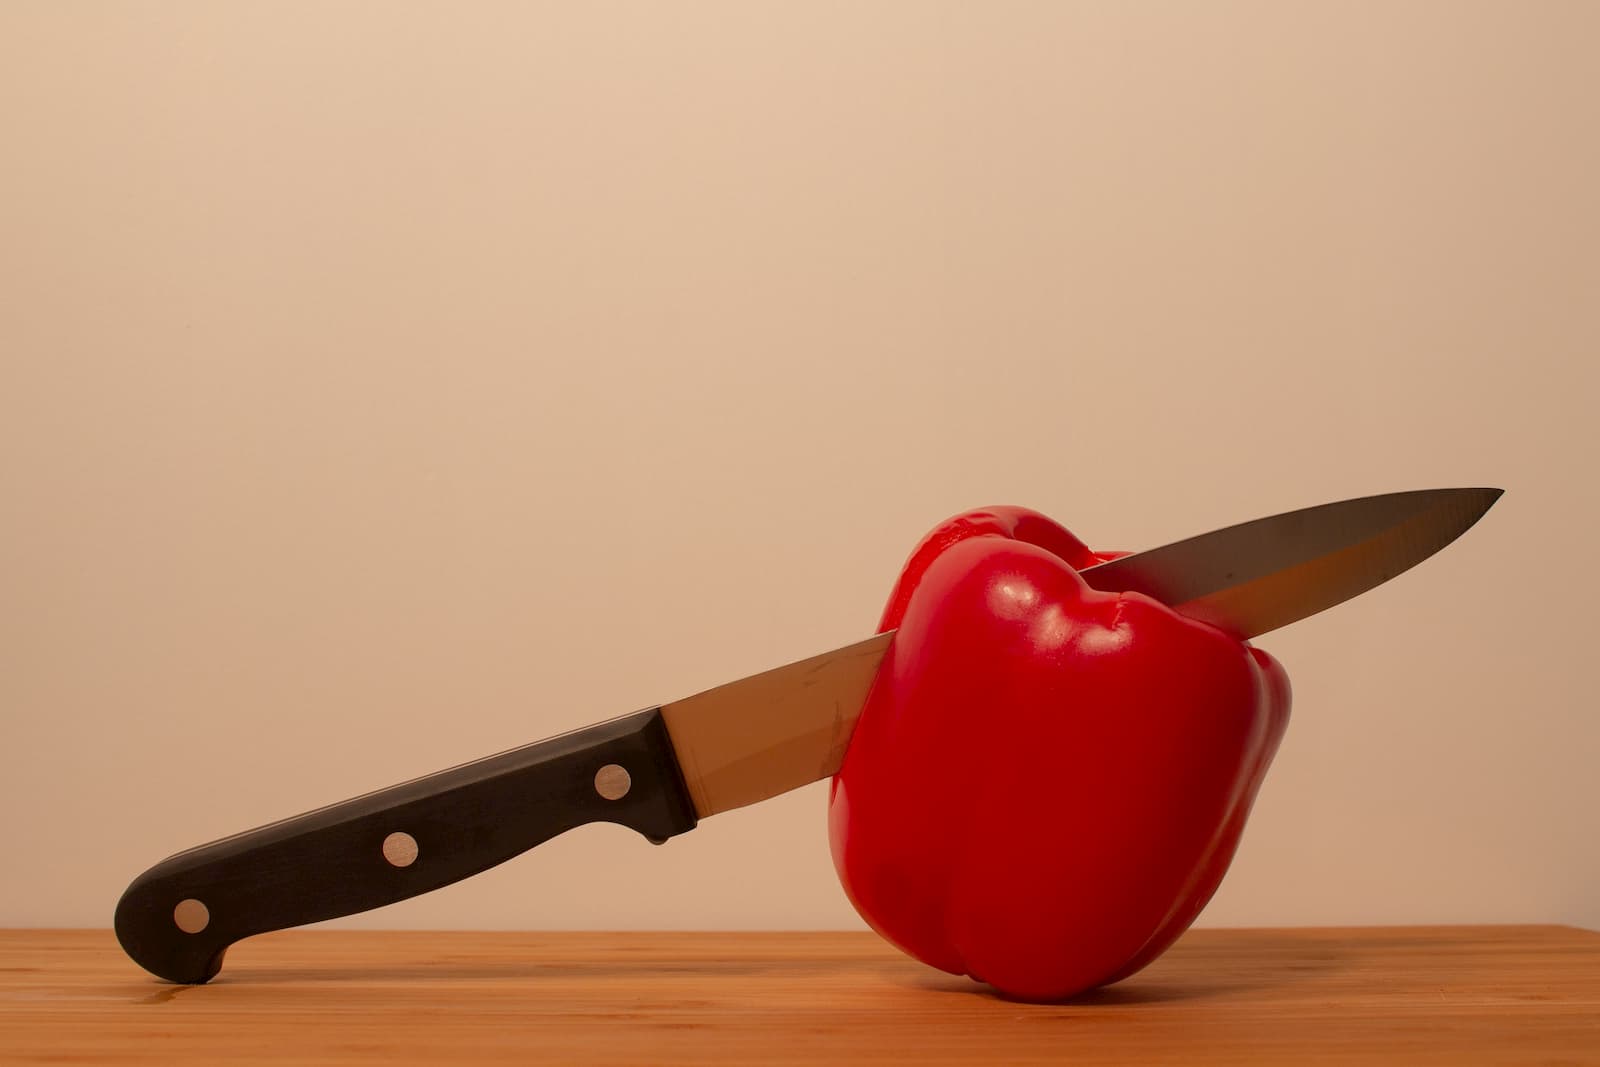 Tipos de cuchillos, cuidados y usos en la cocina